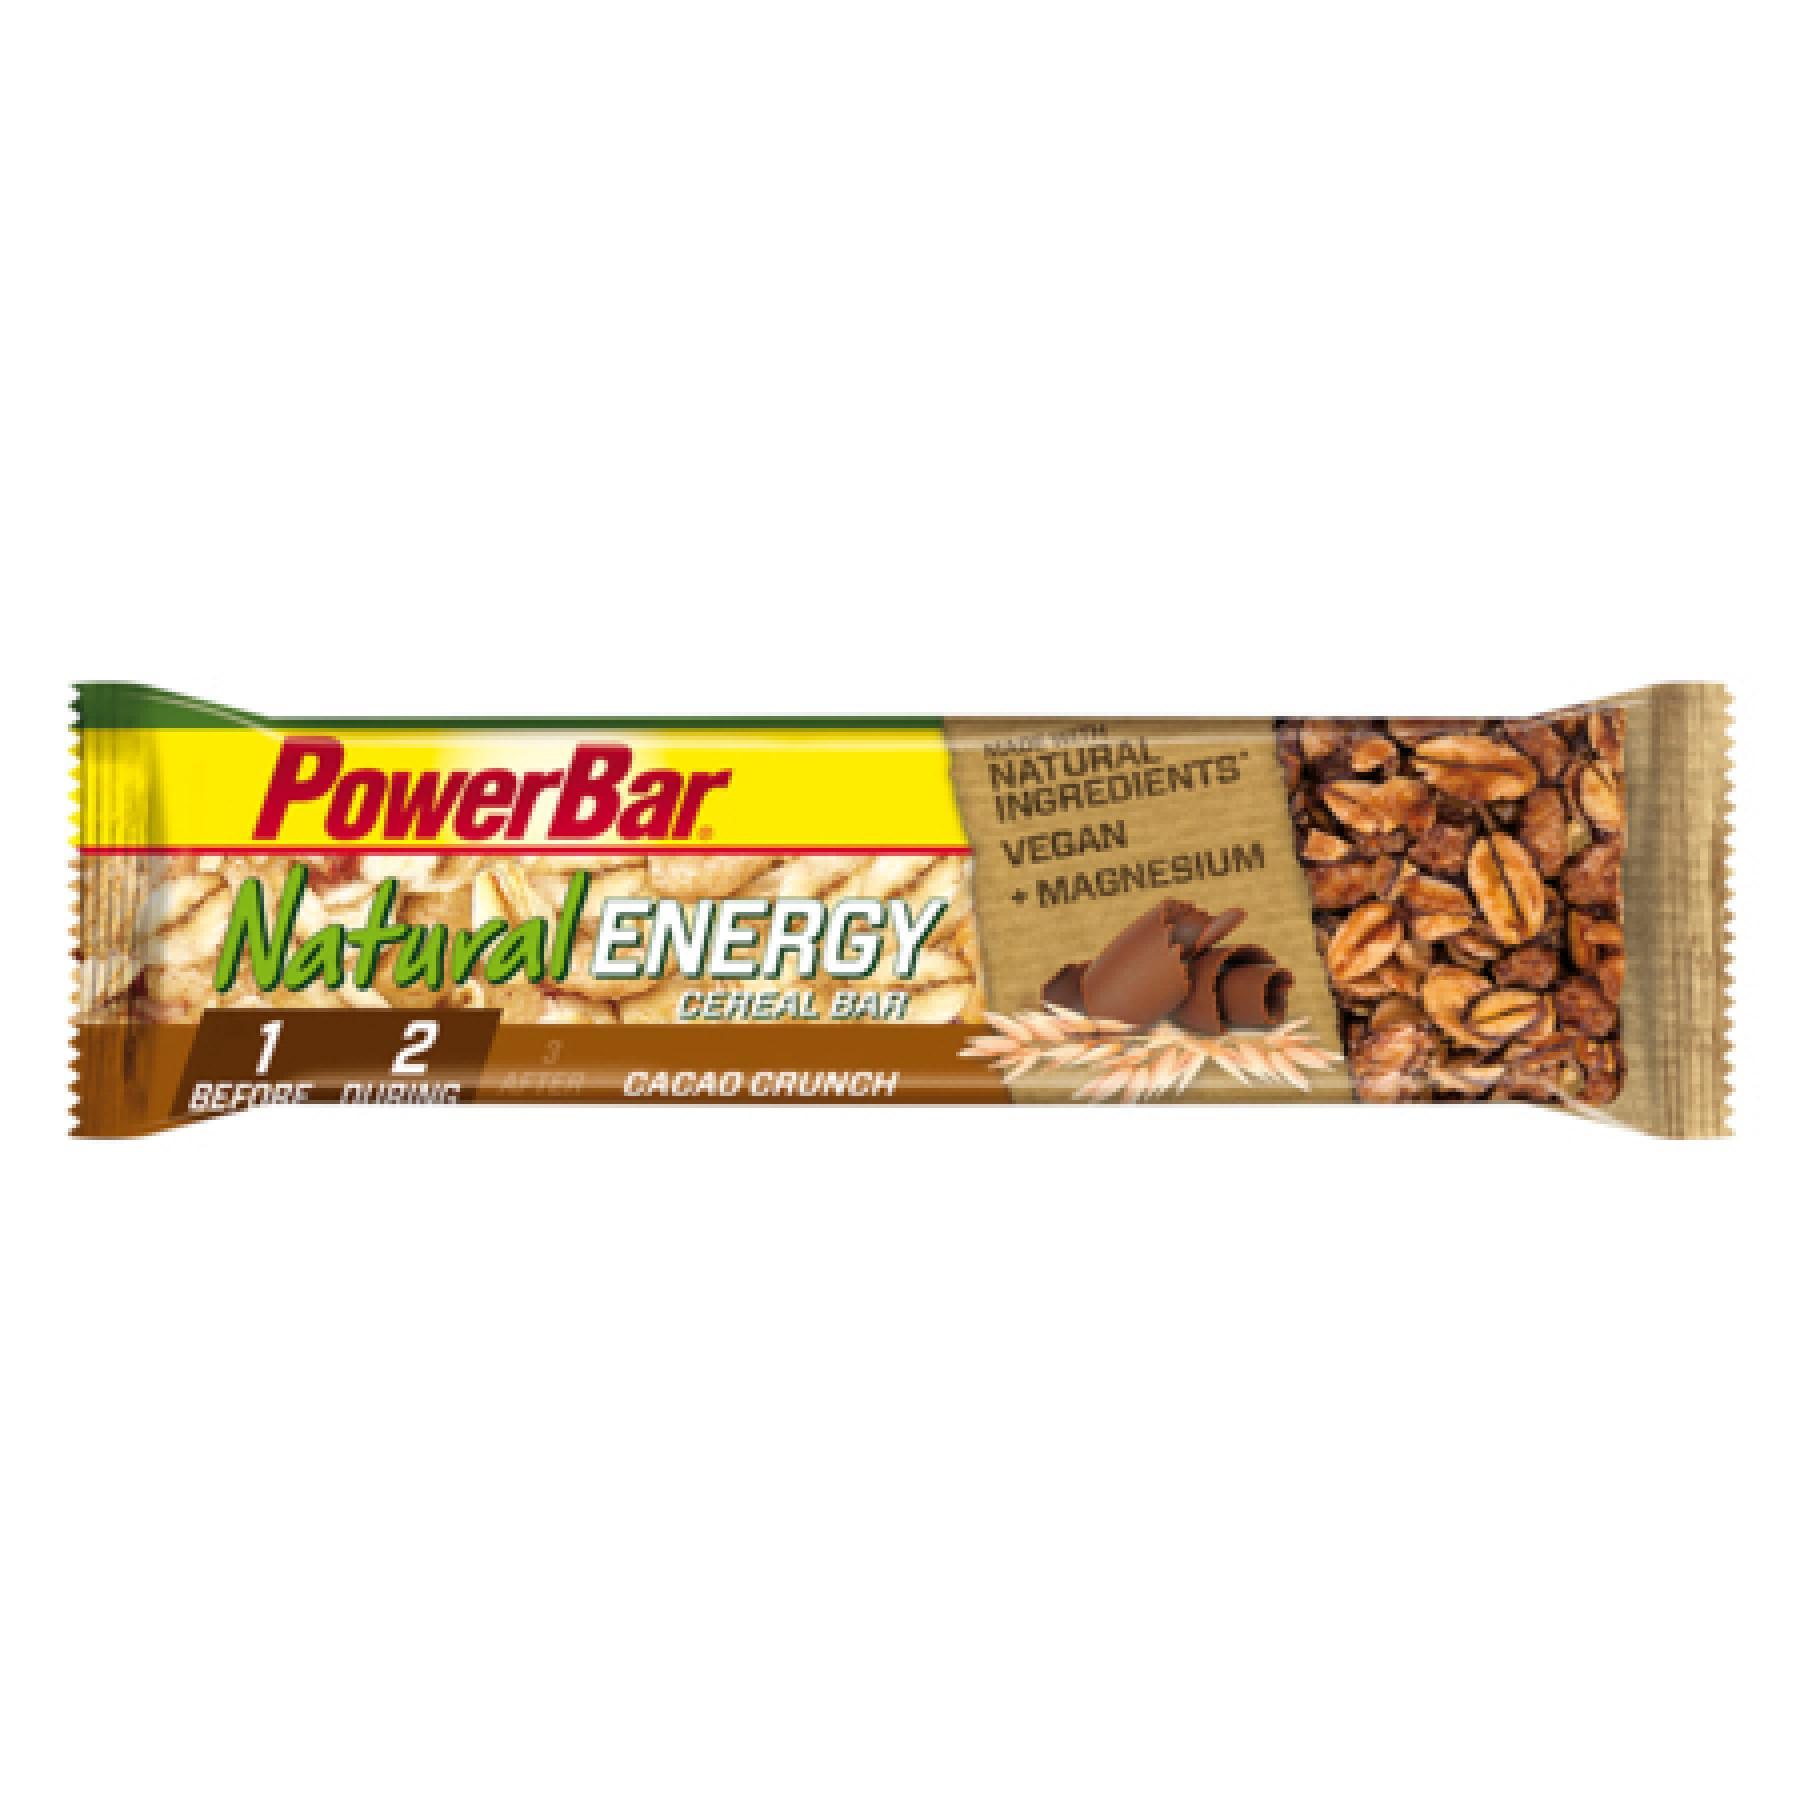 Lot de 24 barres PowerBar Natural Energy Cereals - Cacao Crunch